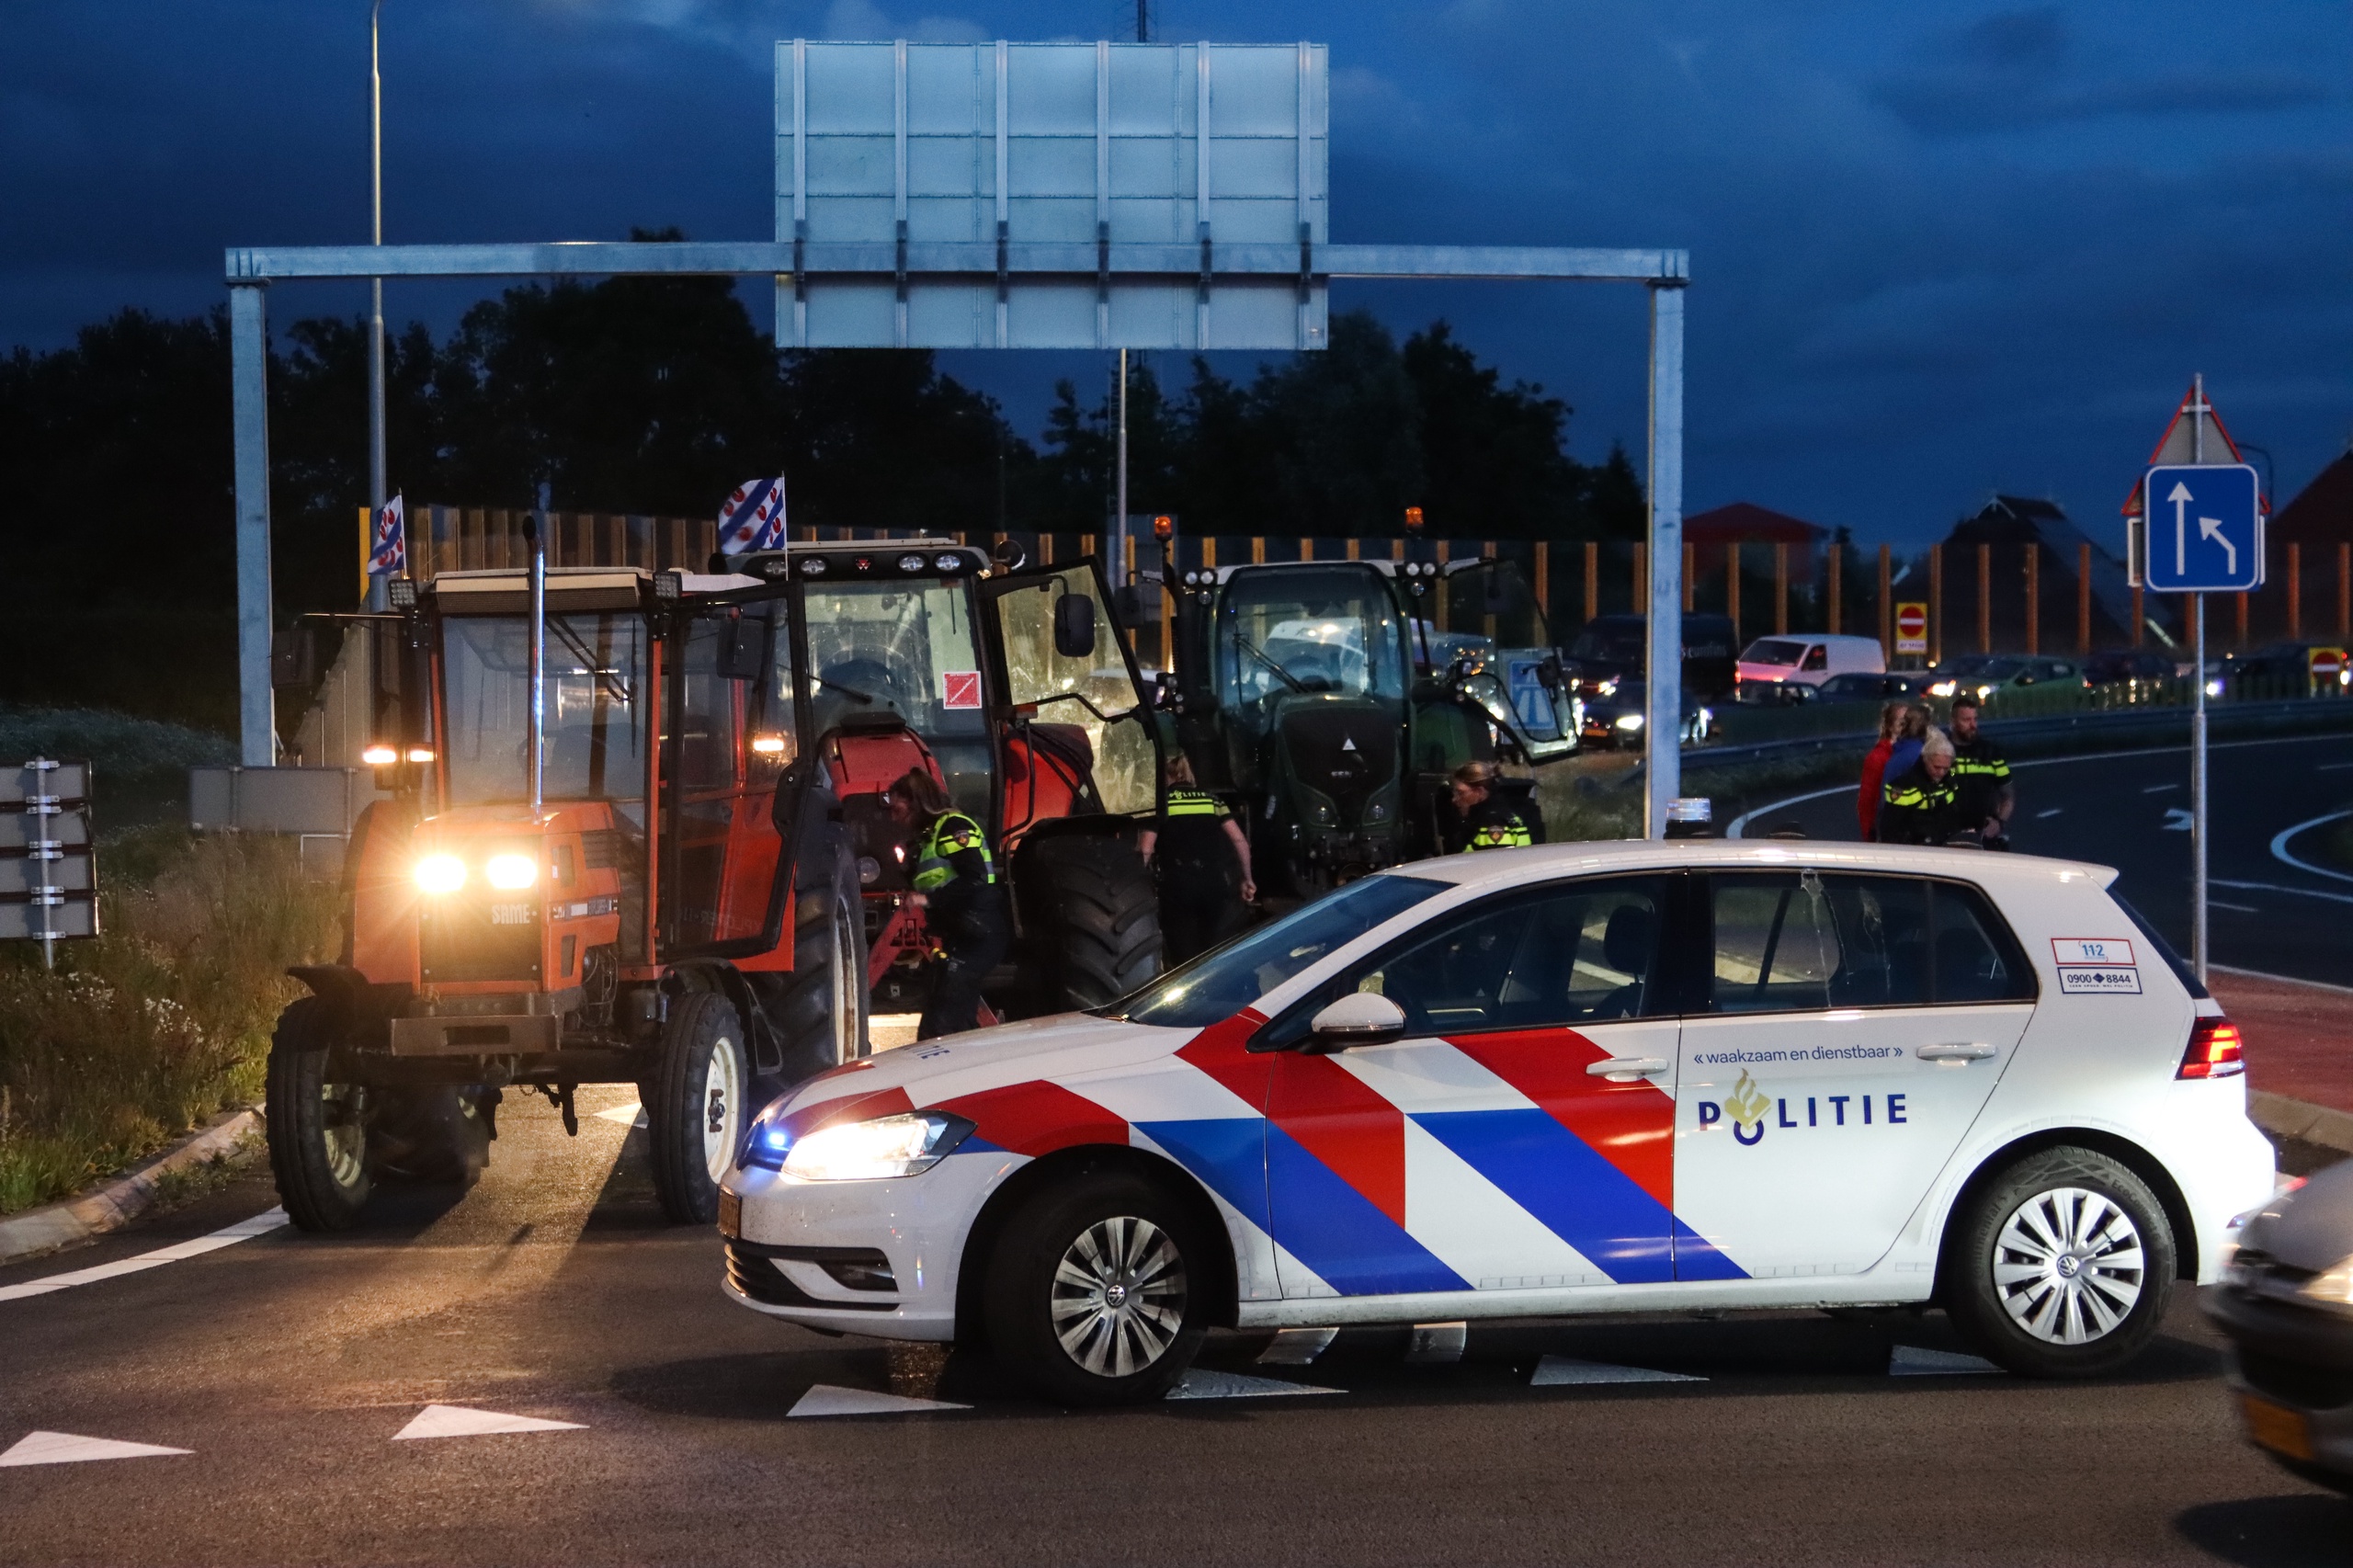 De politie heeft gericht geschoten bij een boerenprotest bij Heerenveen. Demonstranten probeerden in te rijden op agenten en dienstauto's